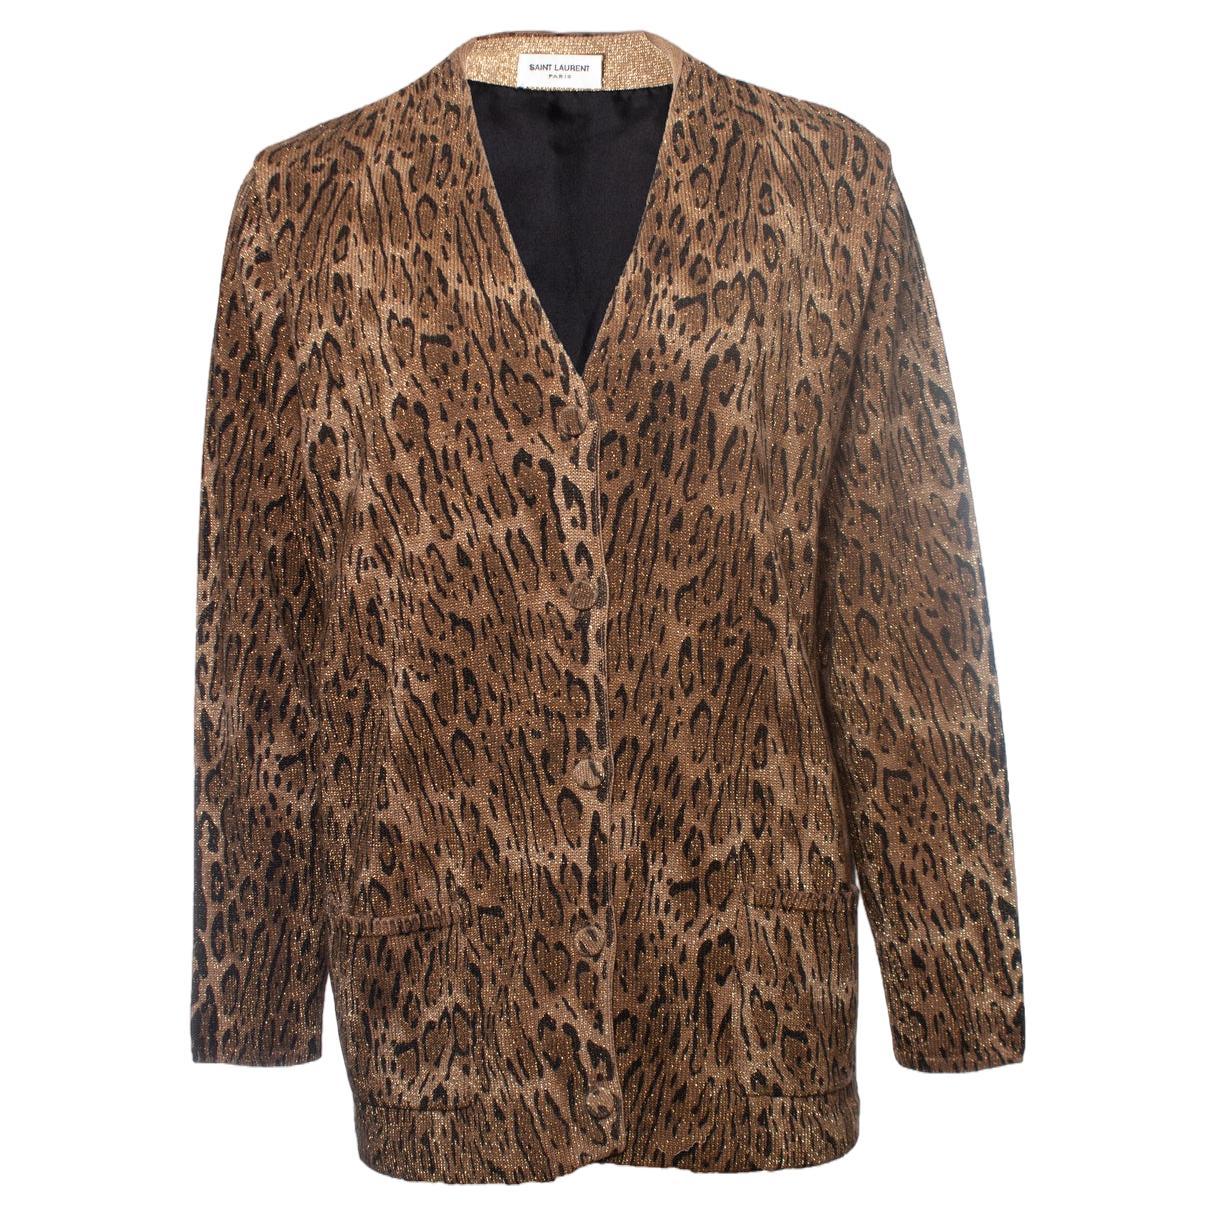 Saint Laurent Strickjacke aus laméfarbener Wolle mit Leopardenmuster